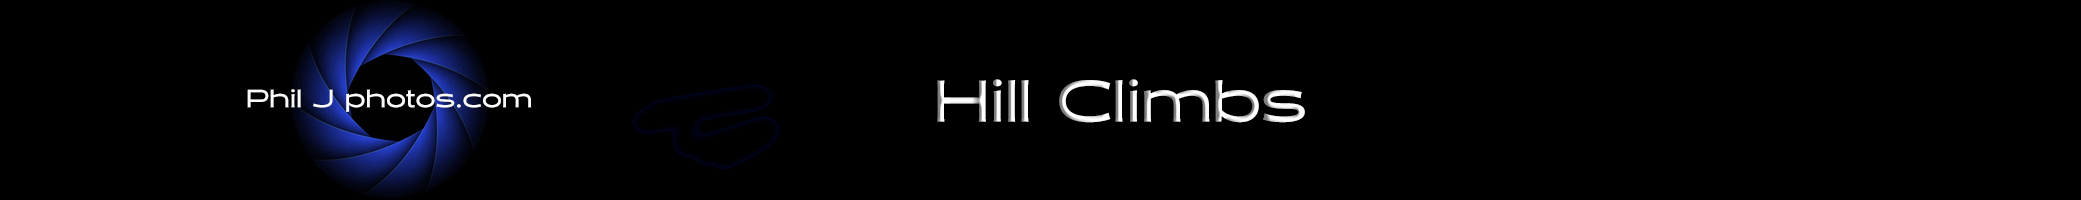 Hill Climbs 26april copy